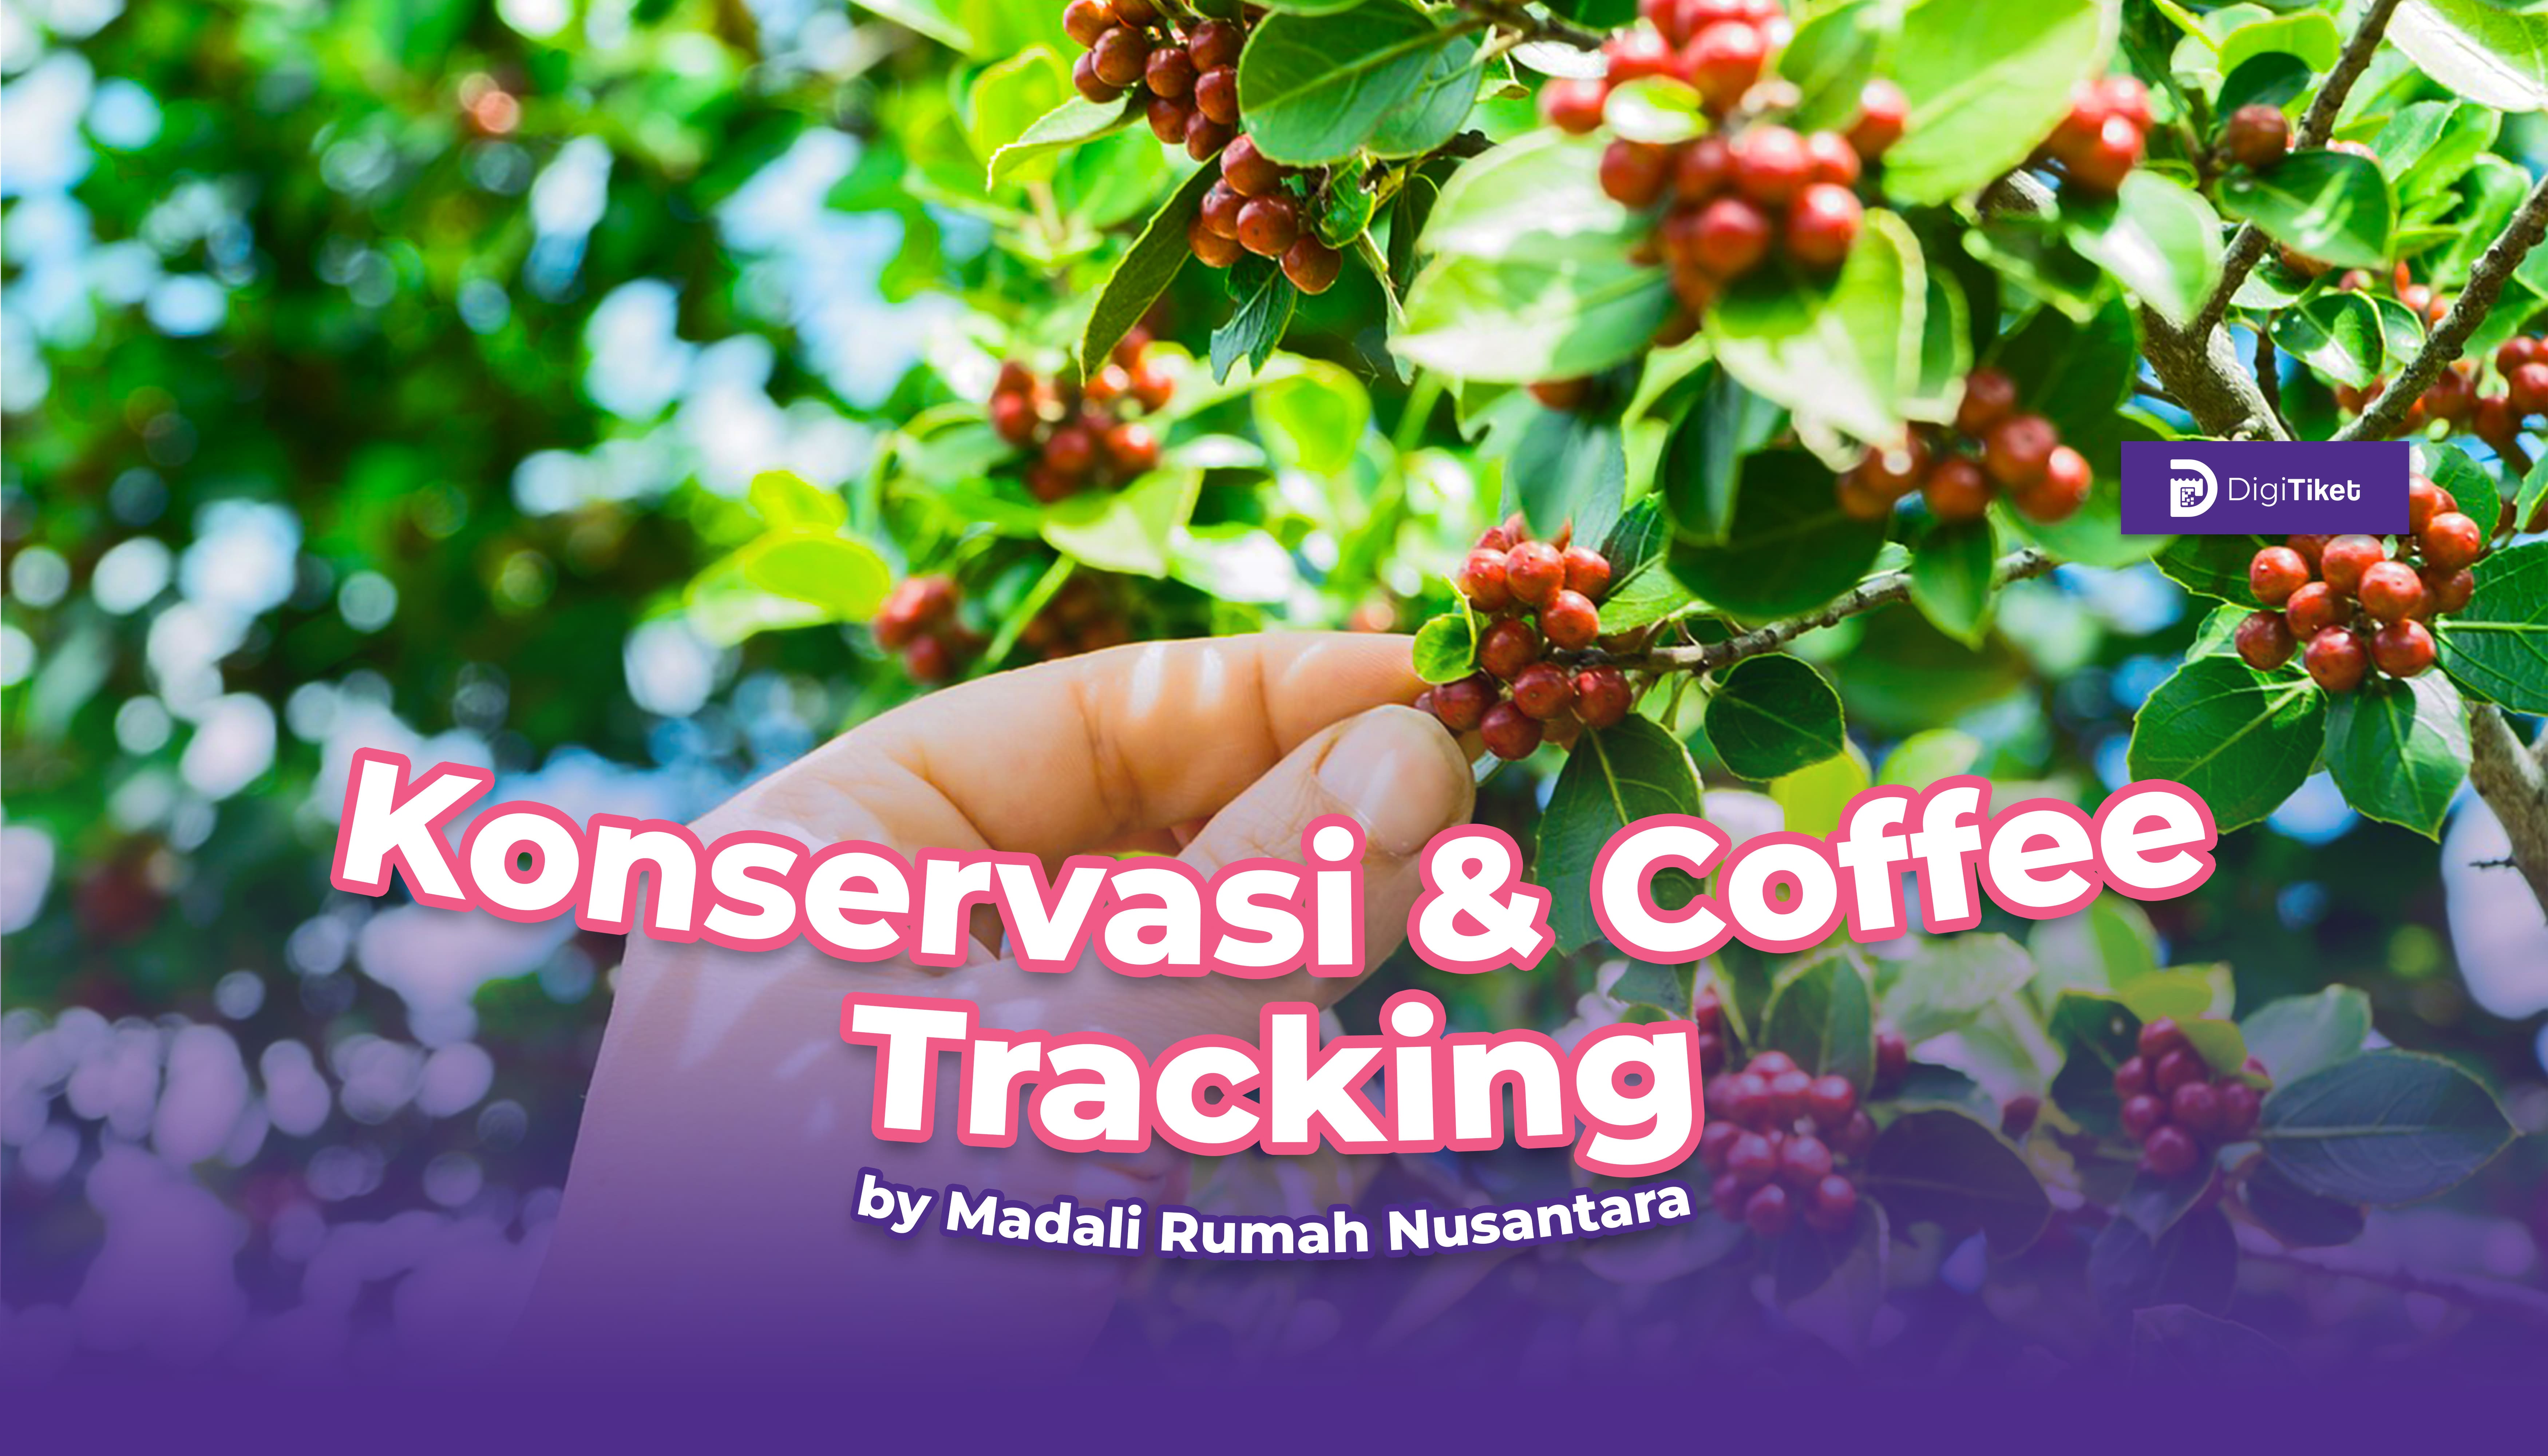 Konservasi dan Cofee Tracking by Madali Rumah Nusantara